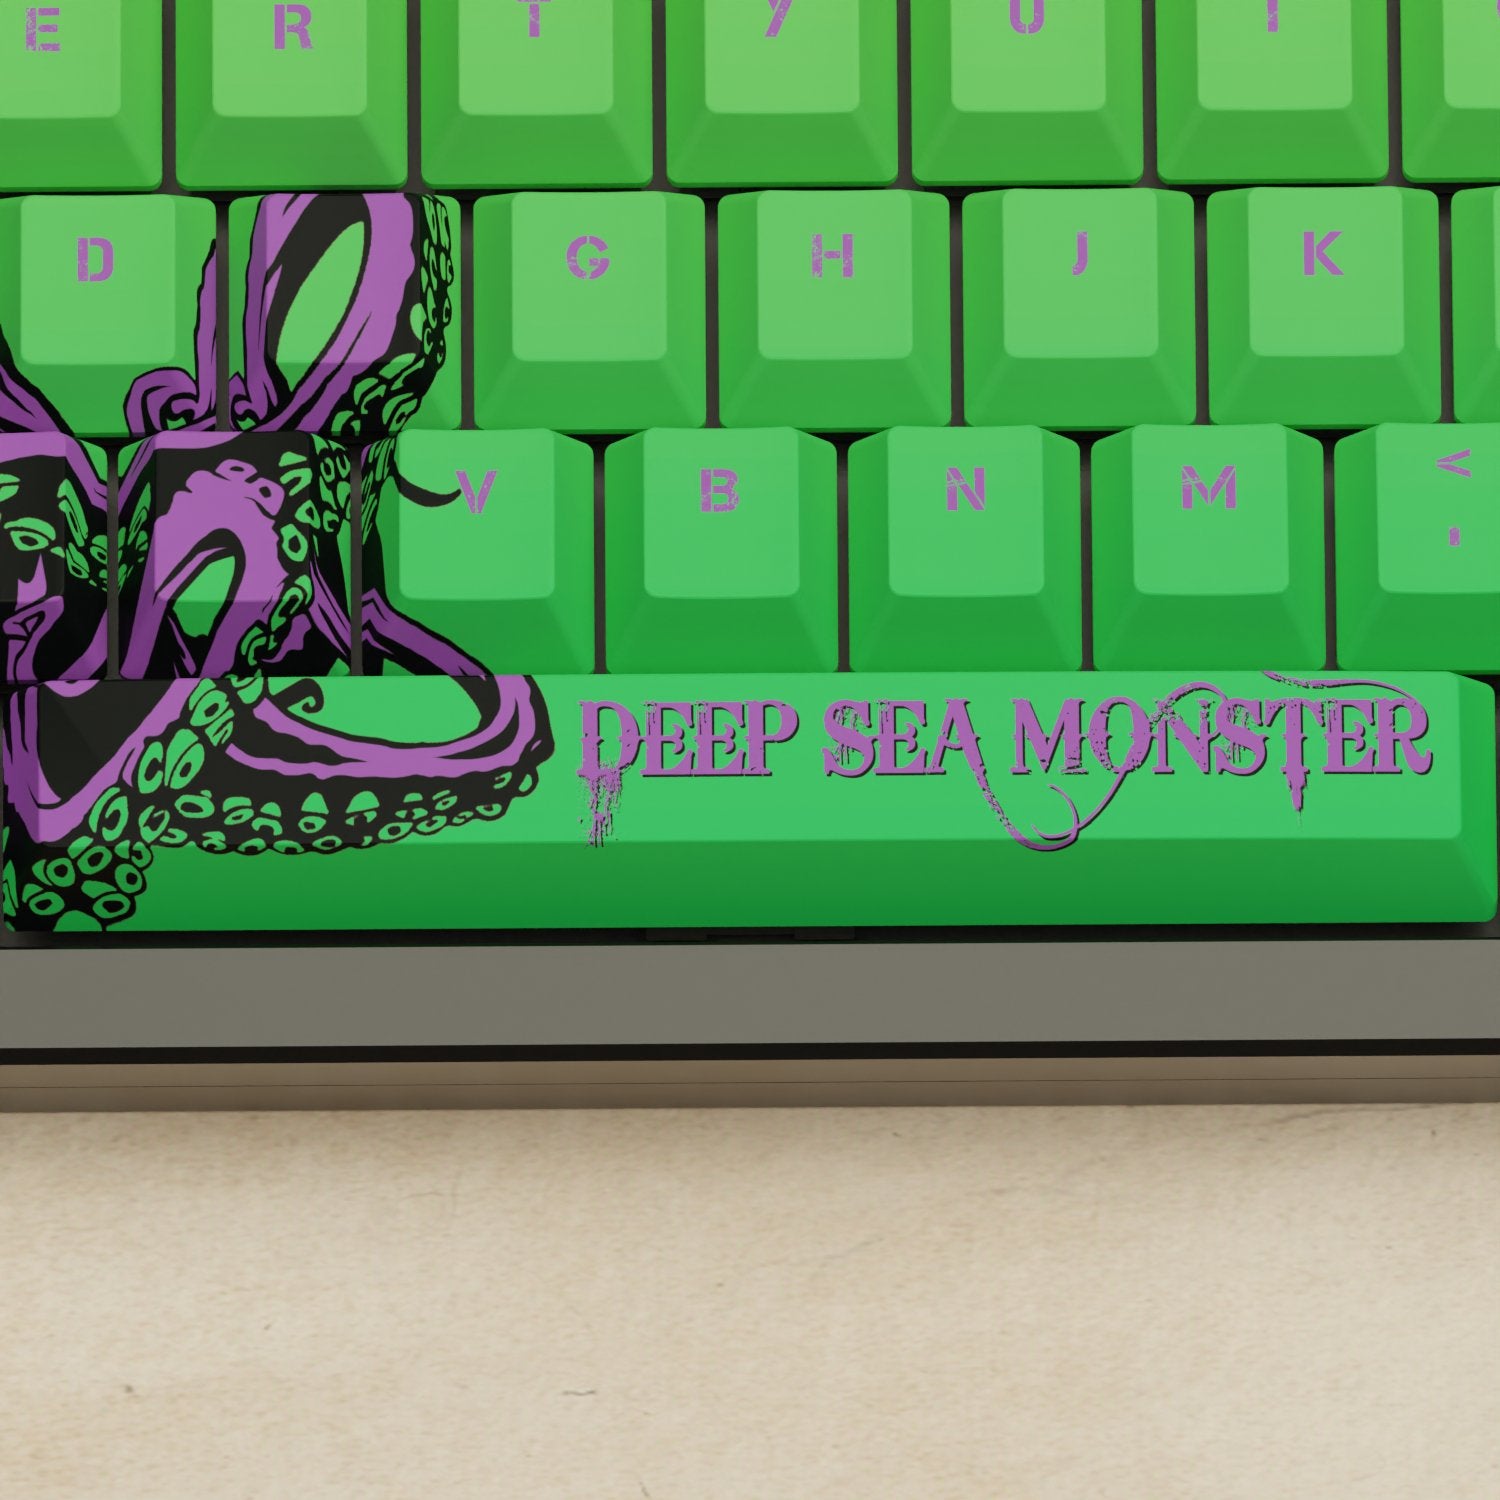 Monsgeek M5 - 100% Kraken Mechanical Keyboard - Goblintechkeys